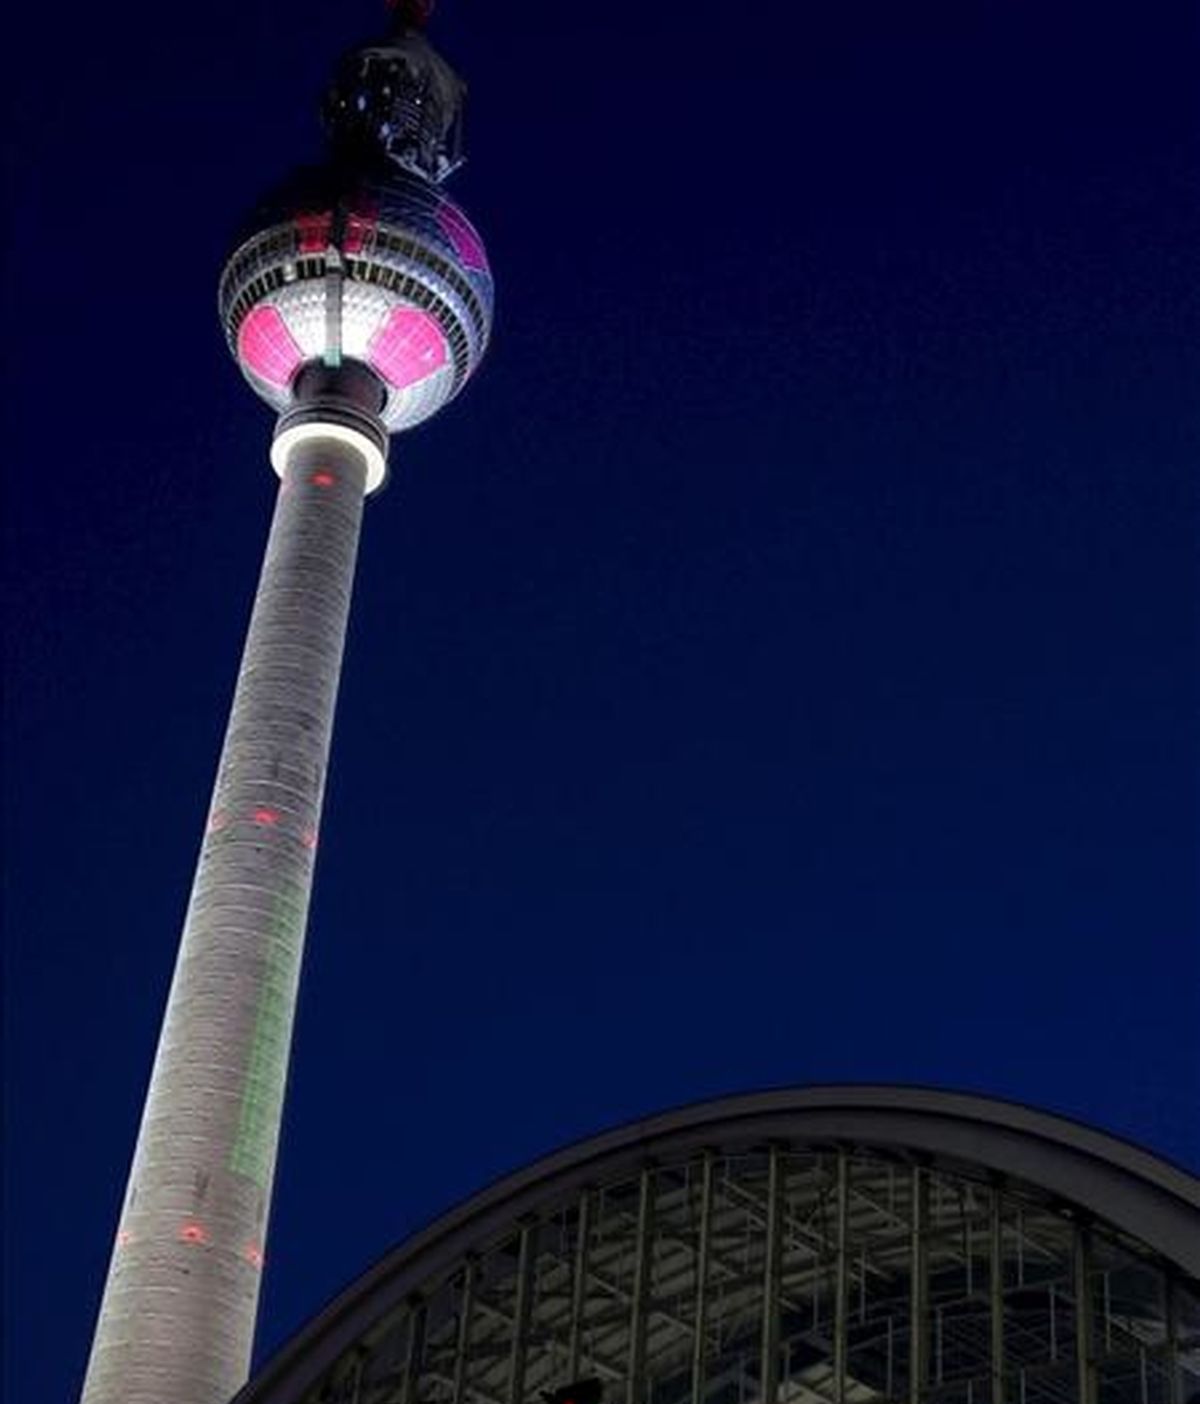 La torre de televisión de Berlín aparece iluminada como un balón de fútbol, en la plaza Alexander, en Berlín (Alemania). EFE/Archivo